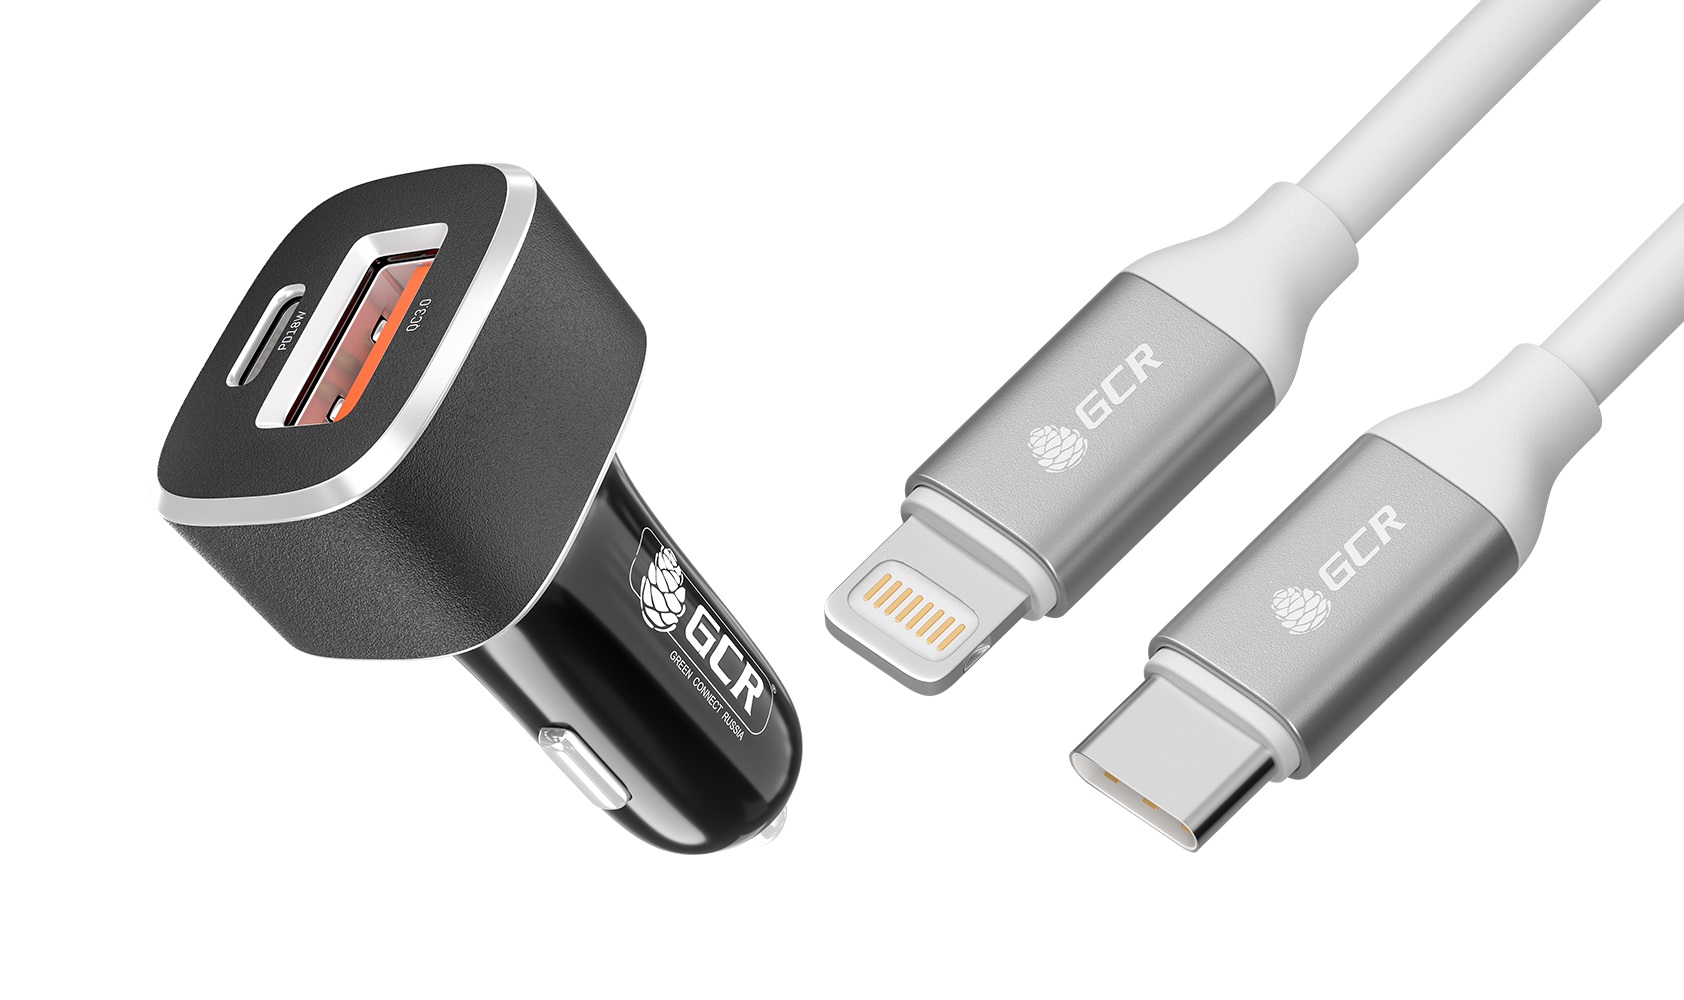 Комплект от GCR АЗУ на 2 USB порта TypeA и TypeC + кабель для iPhone Lightning TypeC